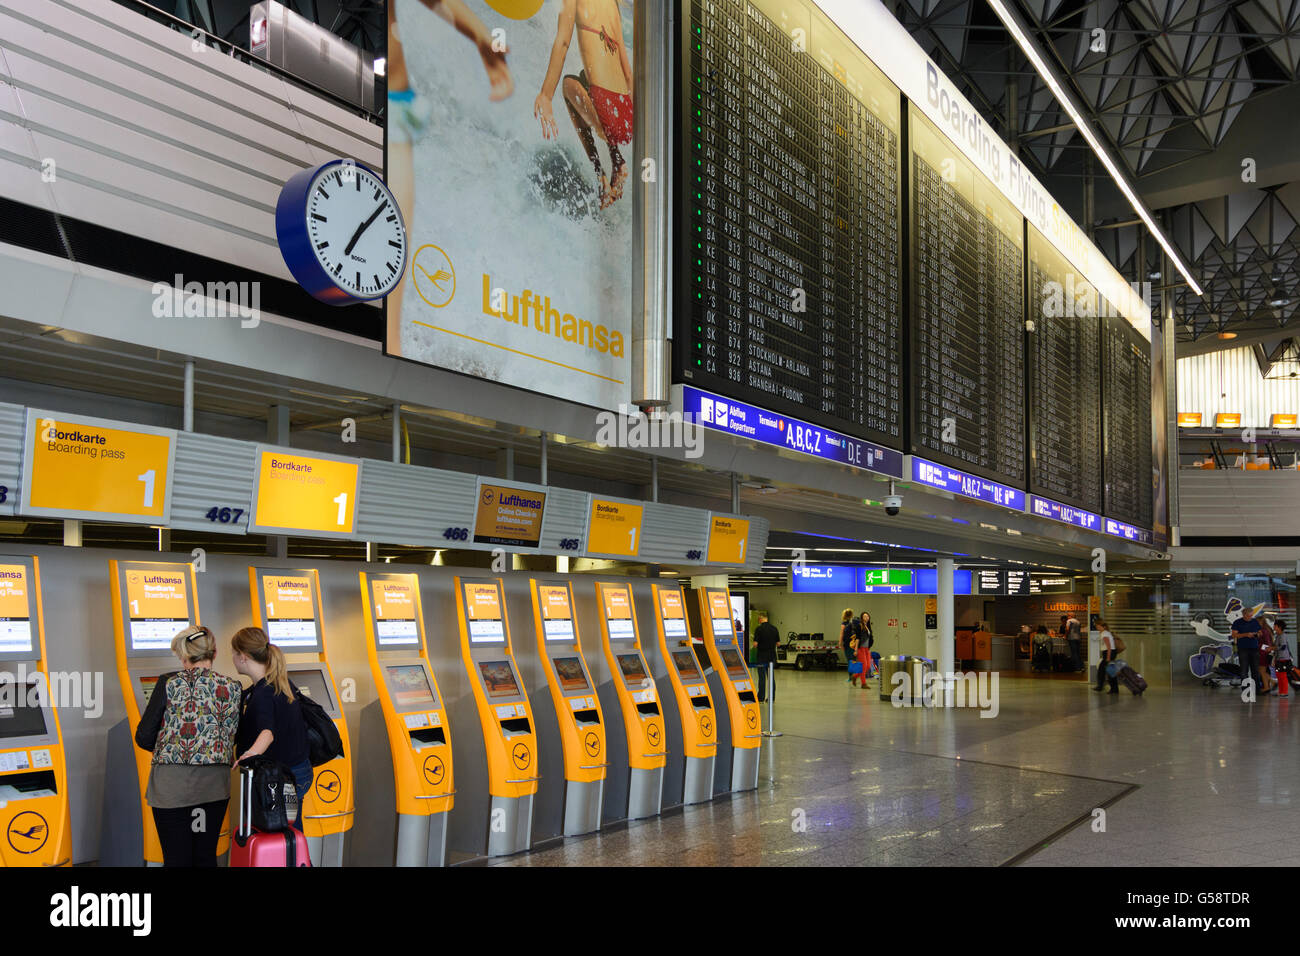 Flughafen Frankfurt: Terminal A und Check-in - Lufthansa Maschinen und große Abfahrt Display, Frankfurt Am Main, Deutschland, Hessen Stockfoto